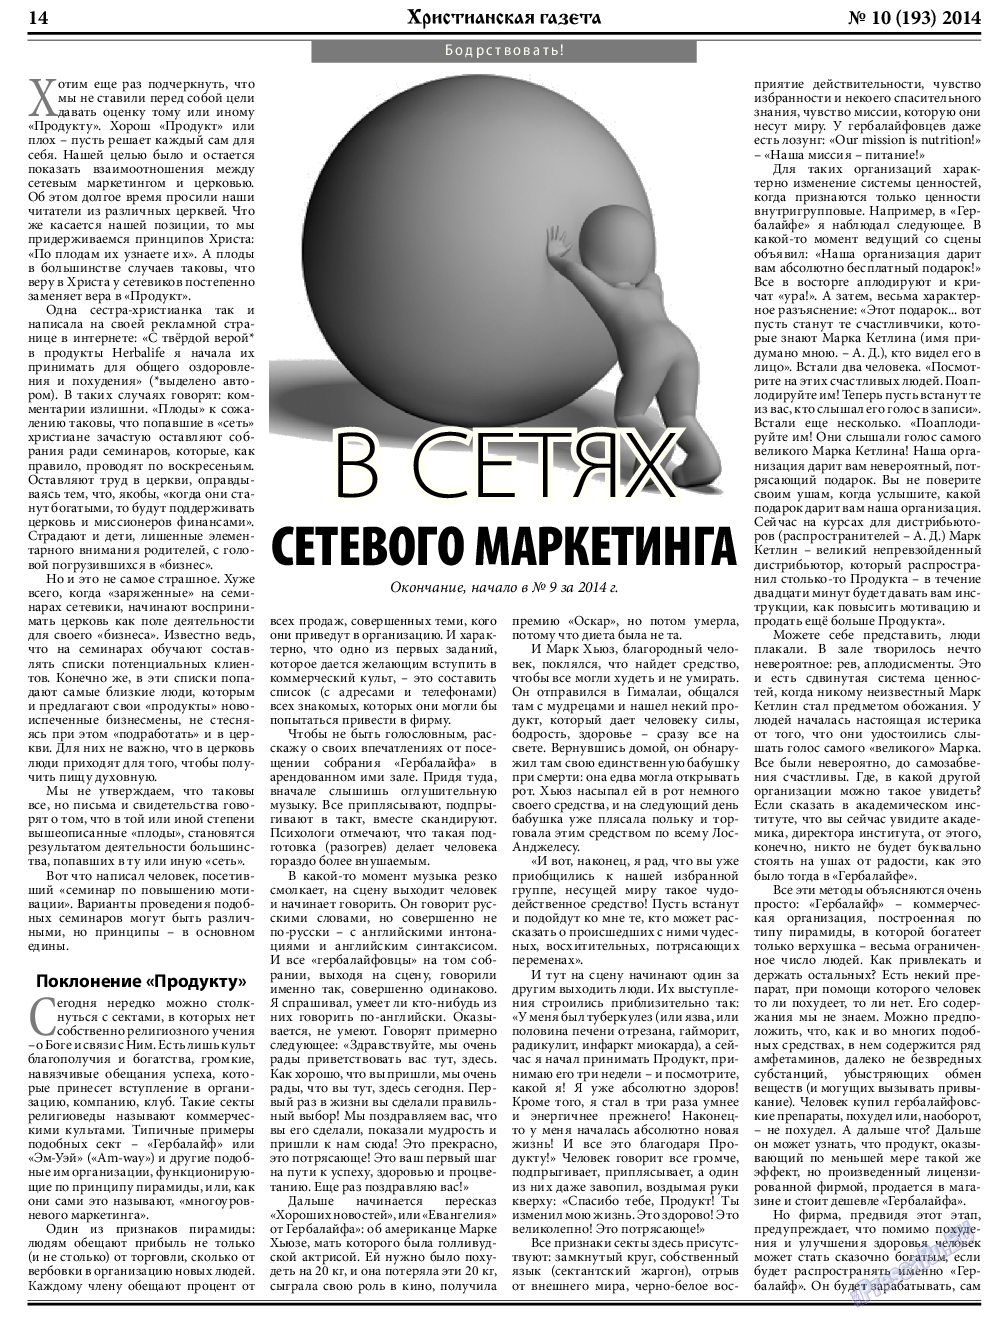 Христианская газета, газета. 2014 №10 стр.22